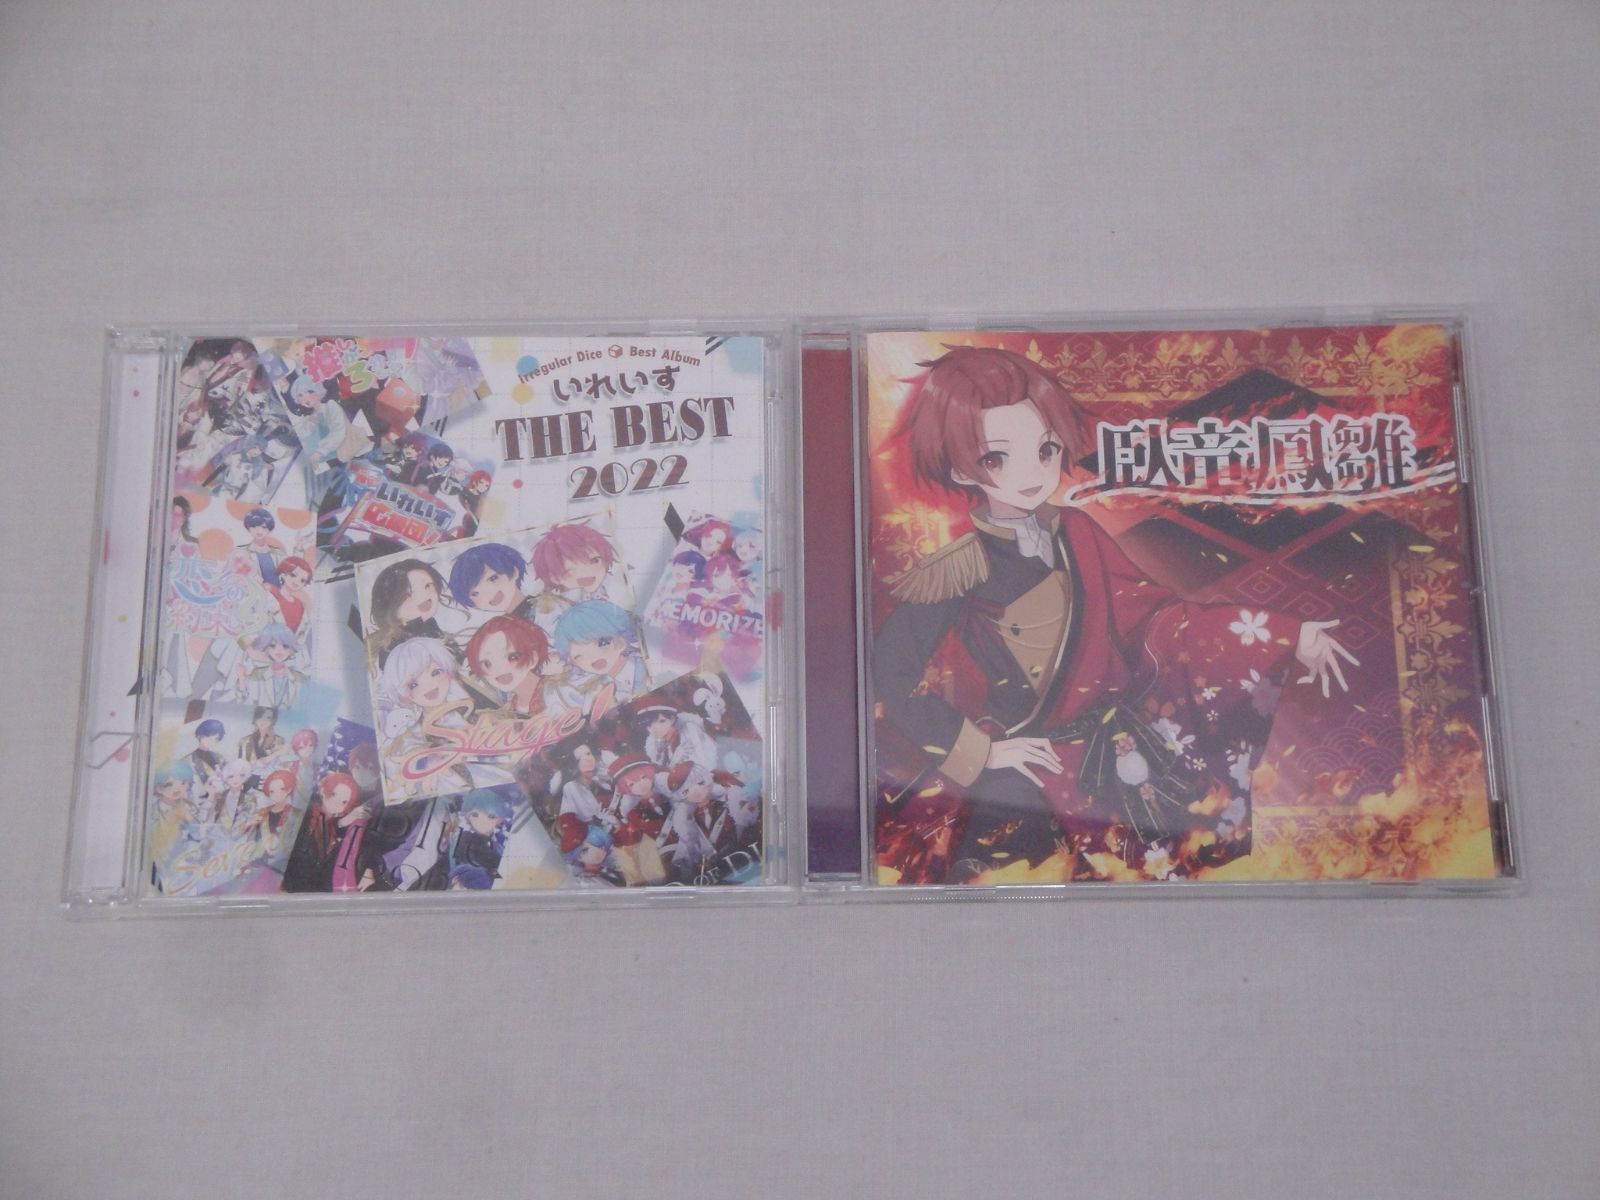 音楽CD いれいす THE BEST 2022 IRIS-0008 りうら 臥竜鳳雛 IRIS-0011